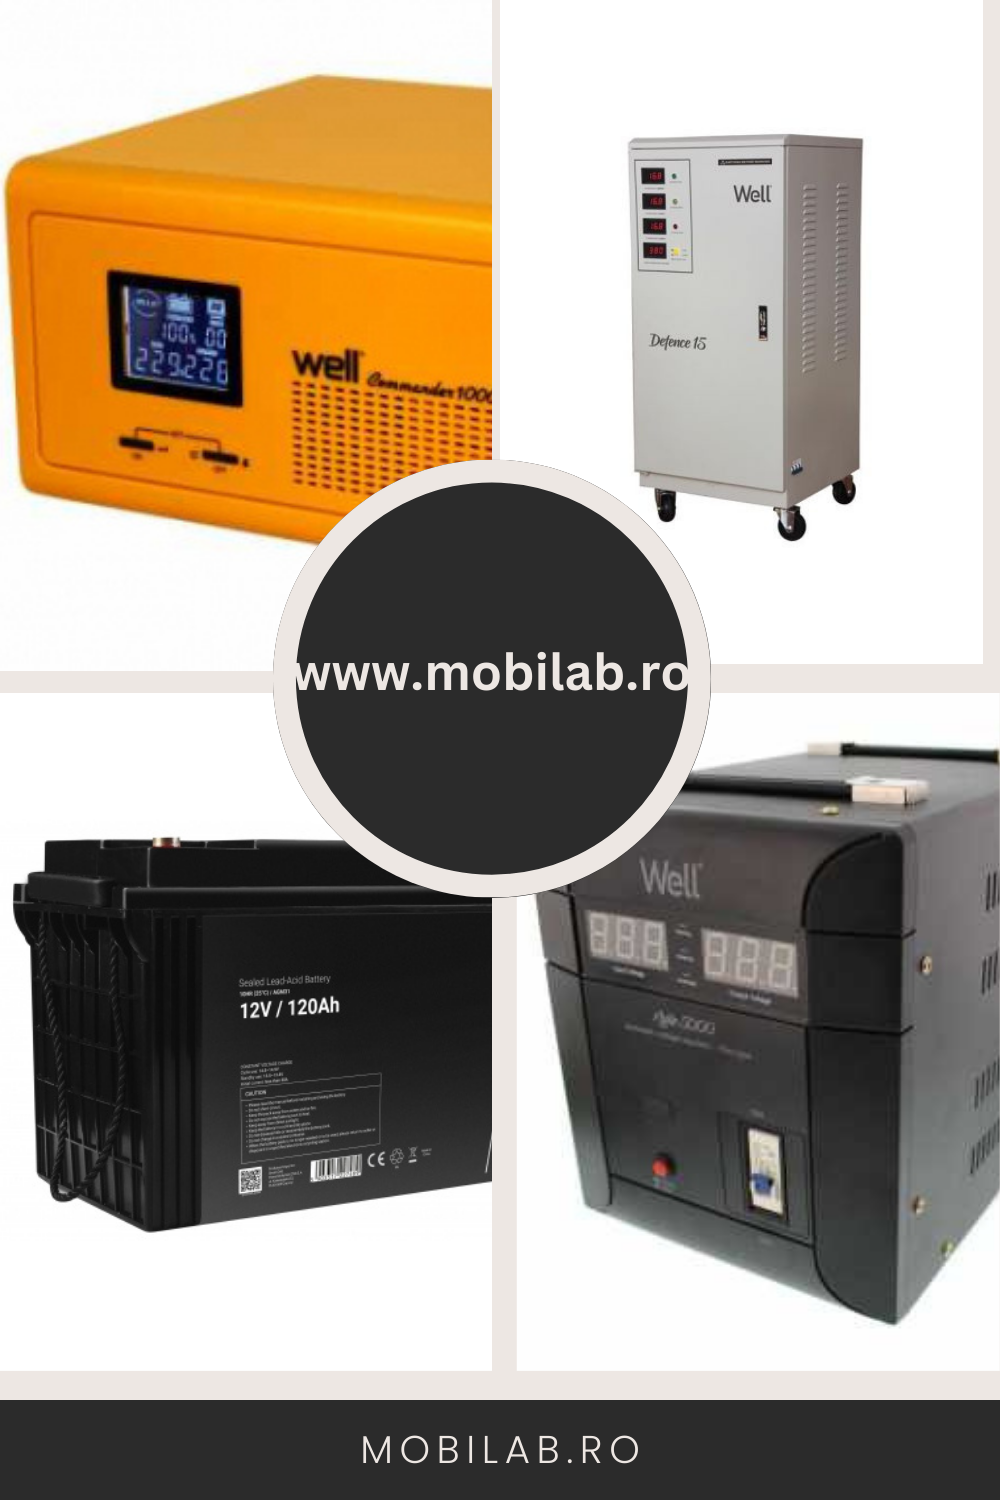 Soluții de energie și protecție electrică pentru casă și birou - descoperă gama Mobilab.ro